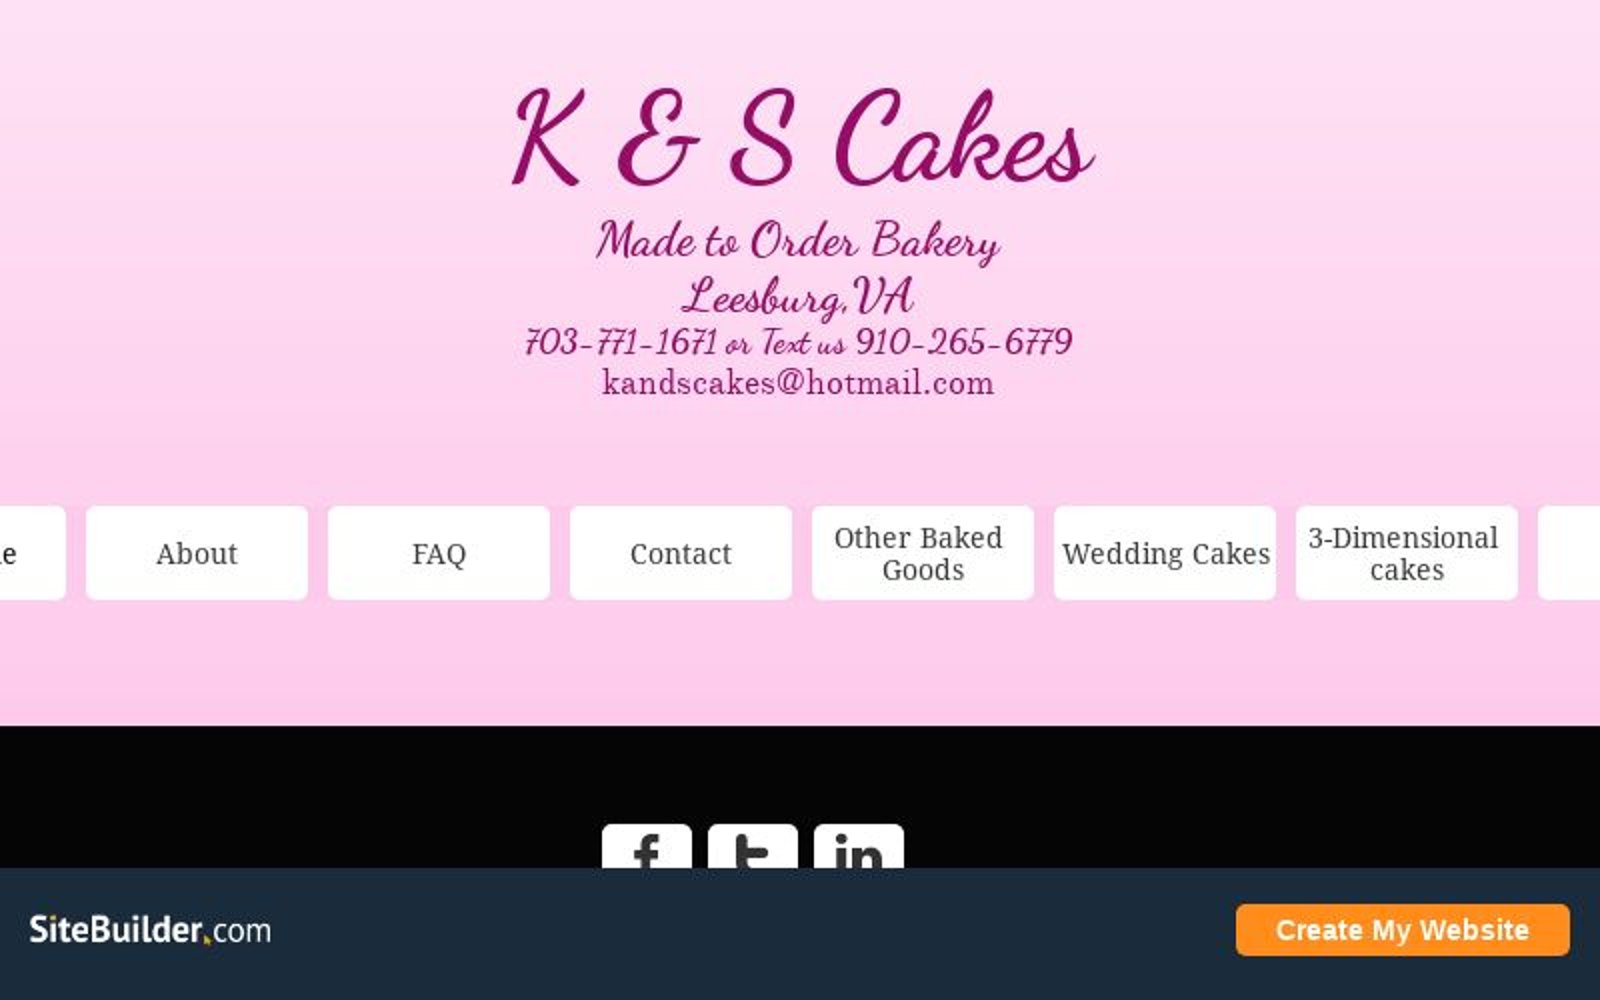 kandscakes.com